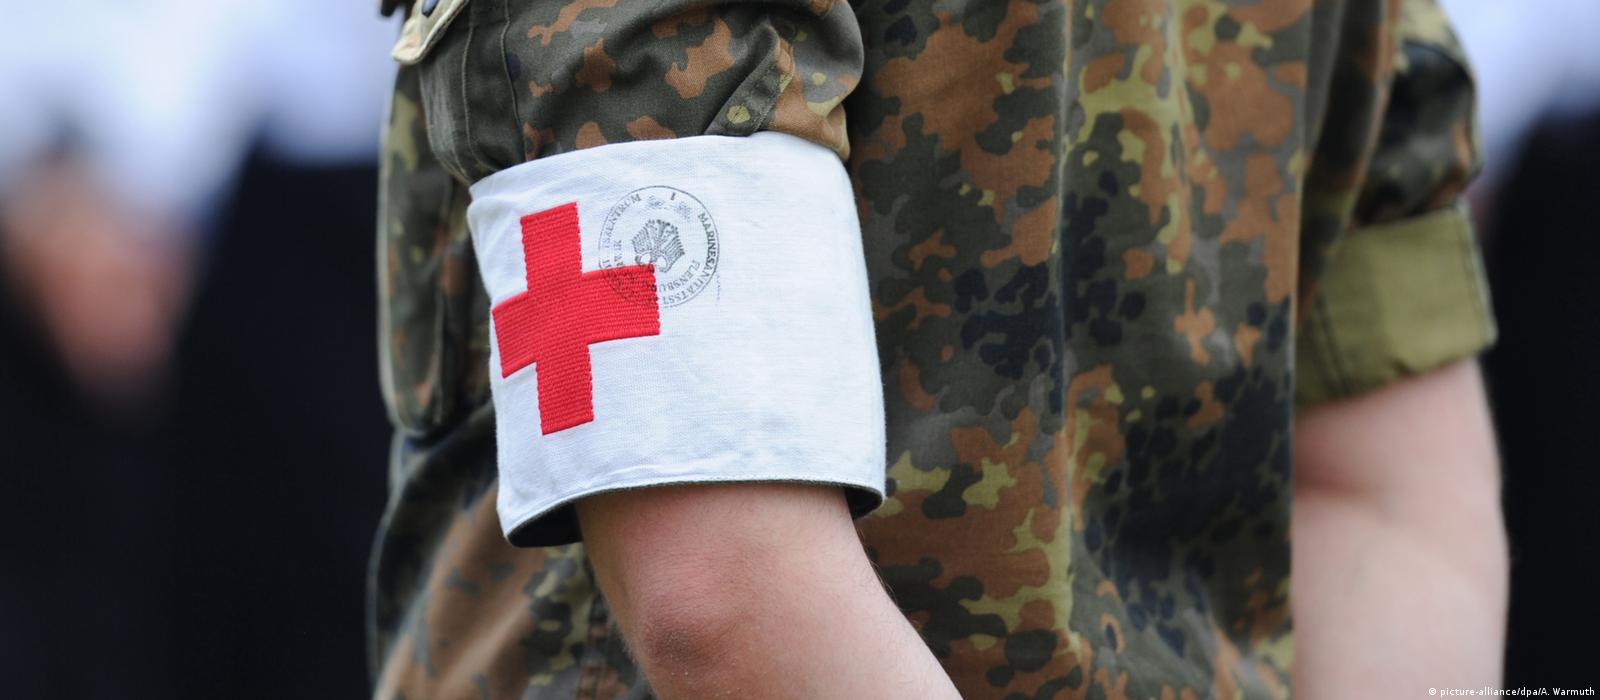 Deutsche Welle: Η Γερμανία ετοιμάζει νοσοκομεία για στρατιωτική σύρραξη